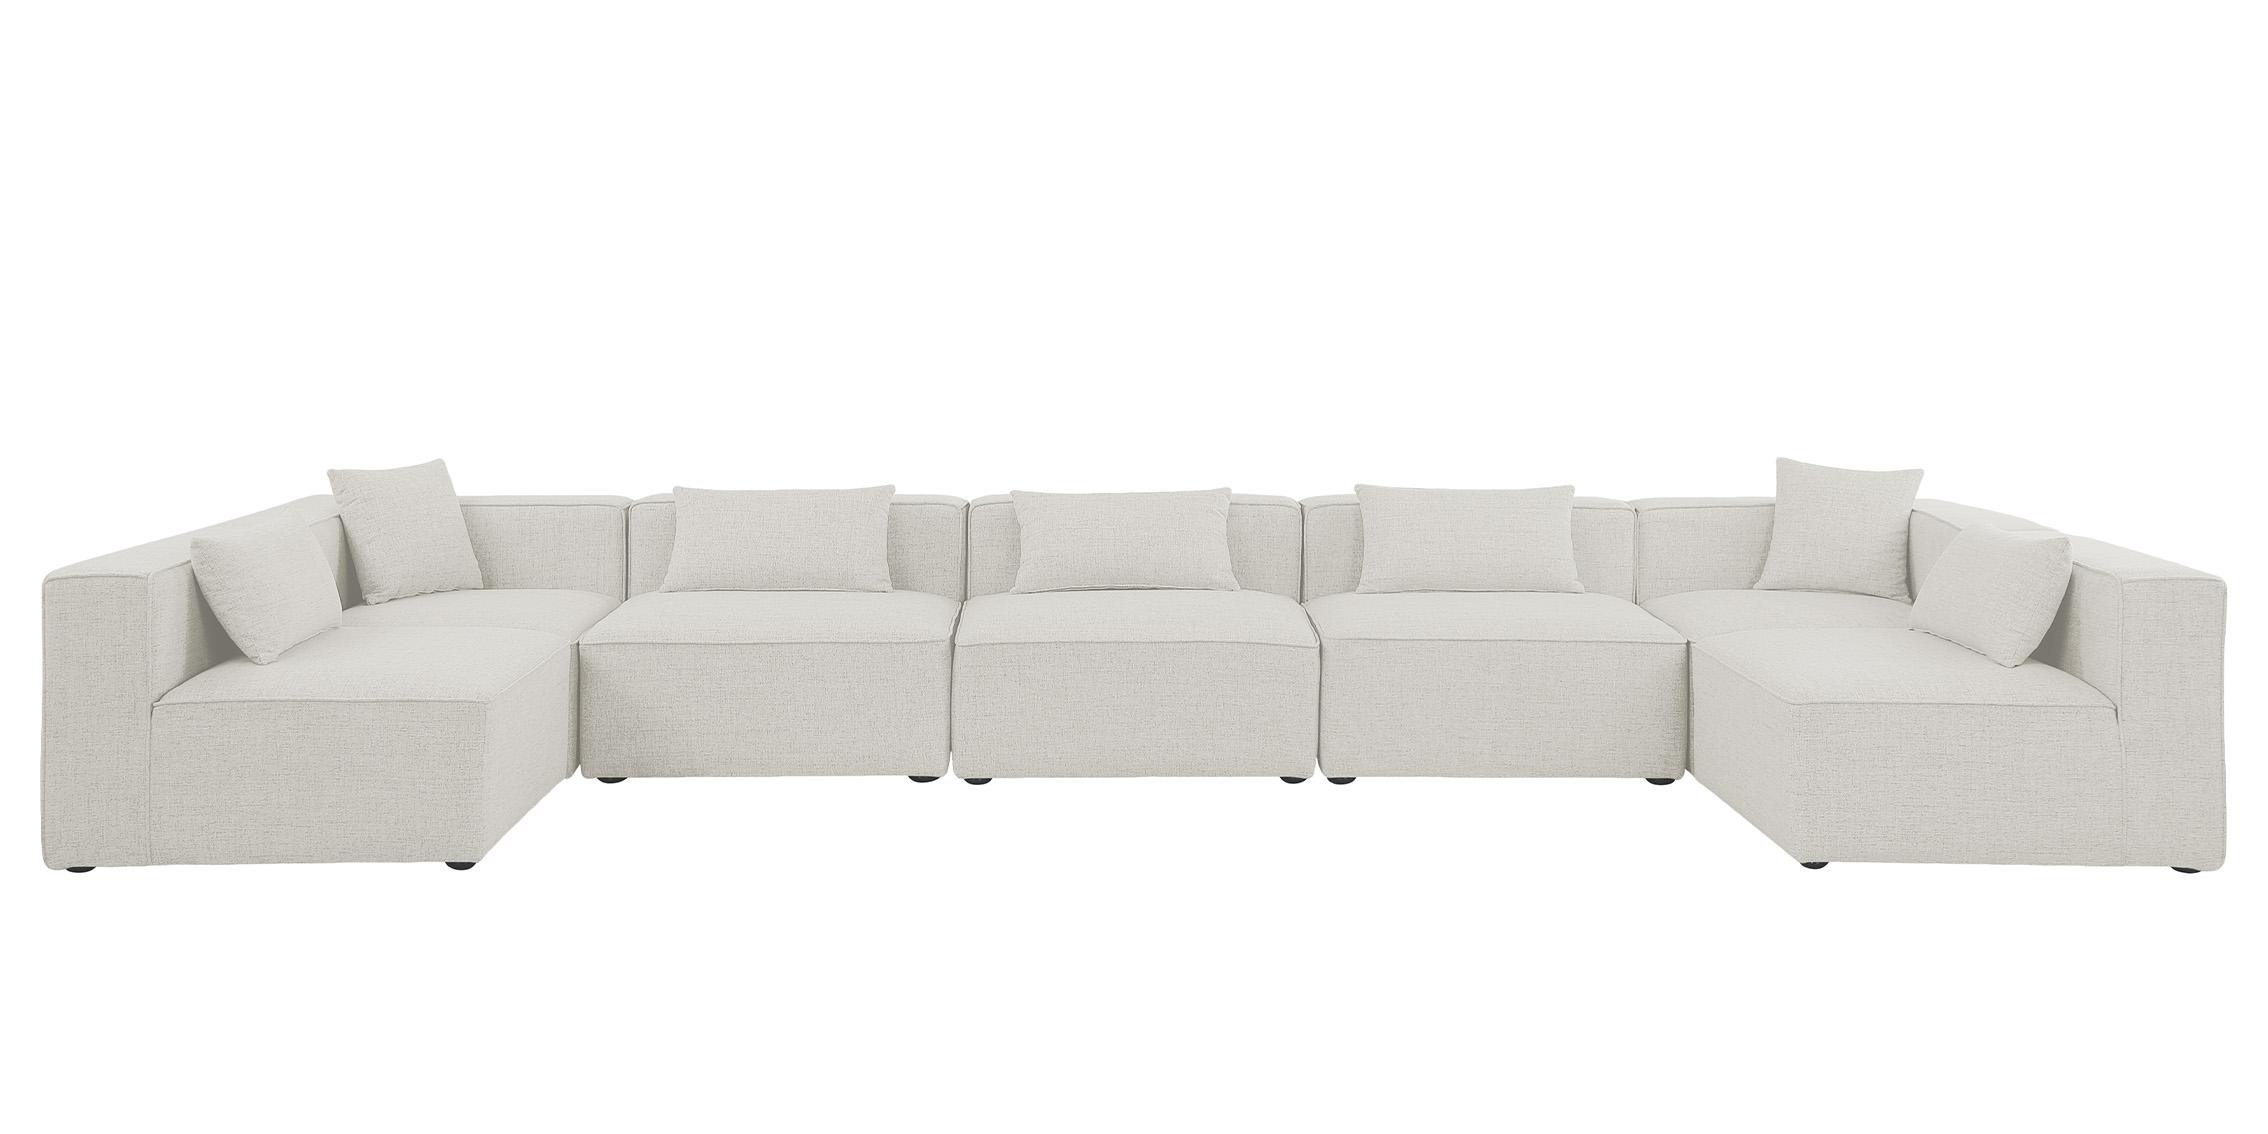 

    
Meridian Furniture CUBE 630Cream-Sec7B Modular Sectional Sofa Cream 630Cream-Sec7B
